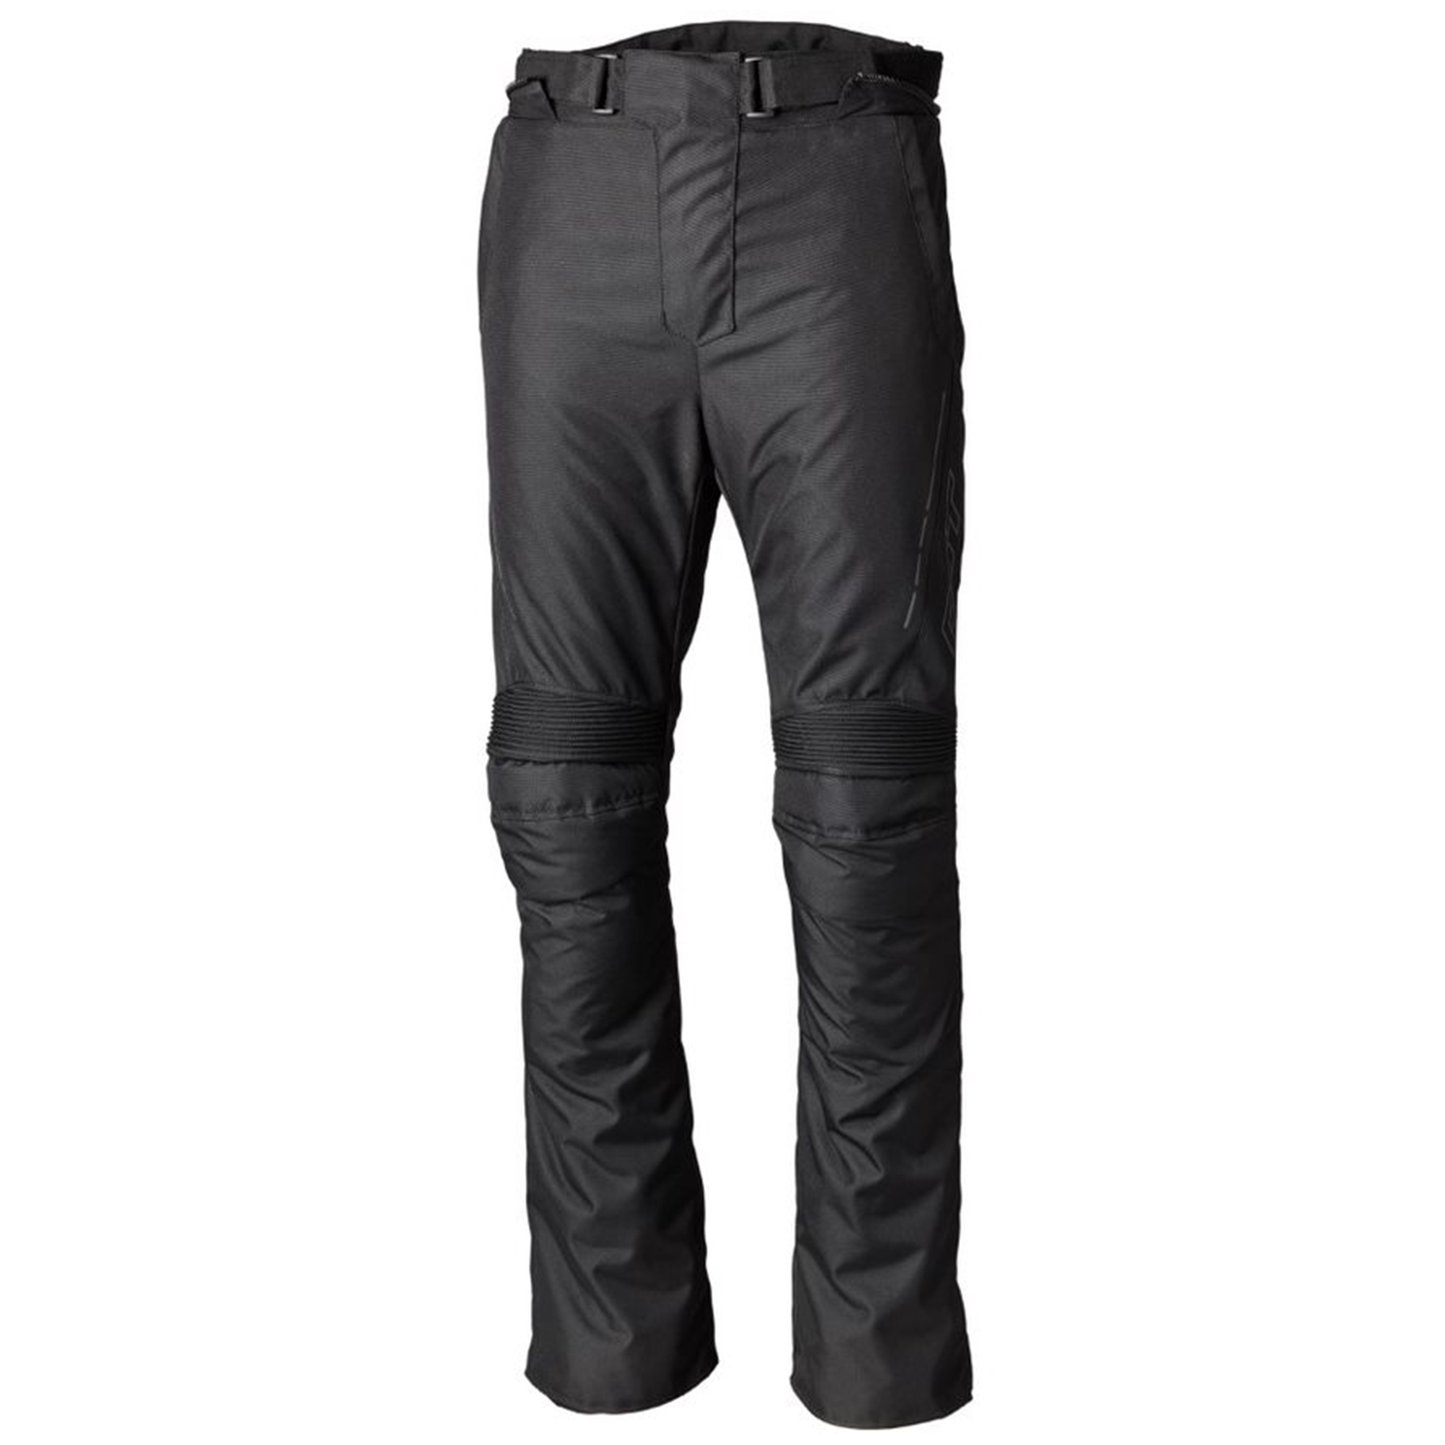 RST S1 (CE) Men's Textile Regular Jean - Black/Black